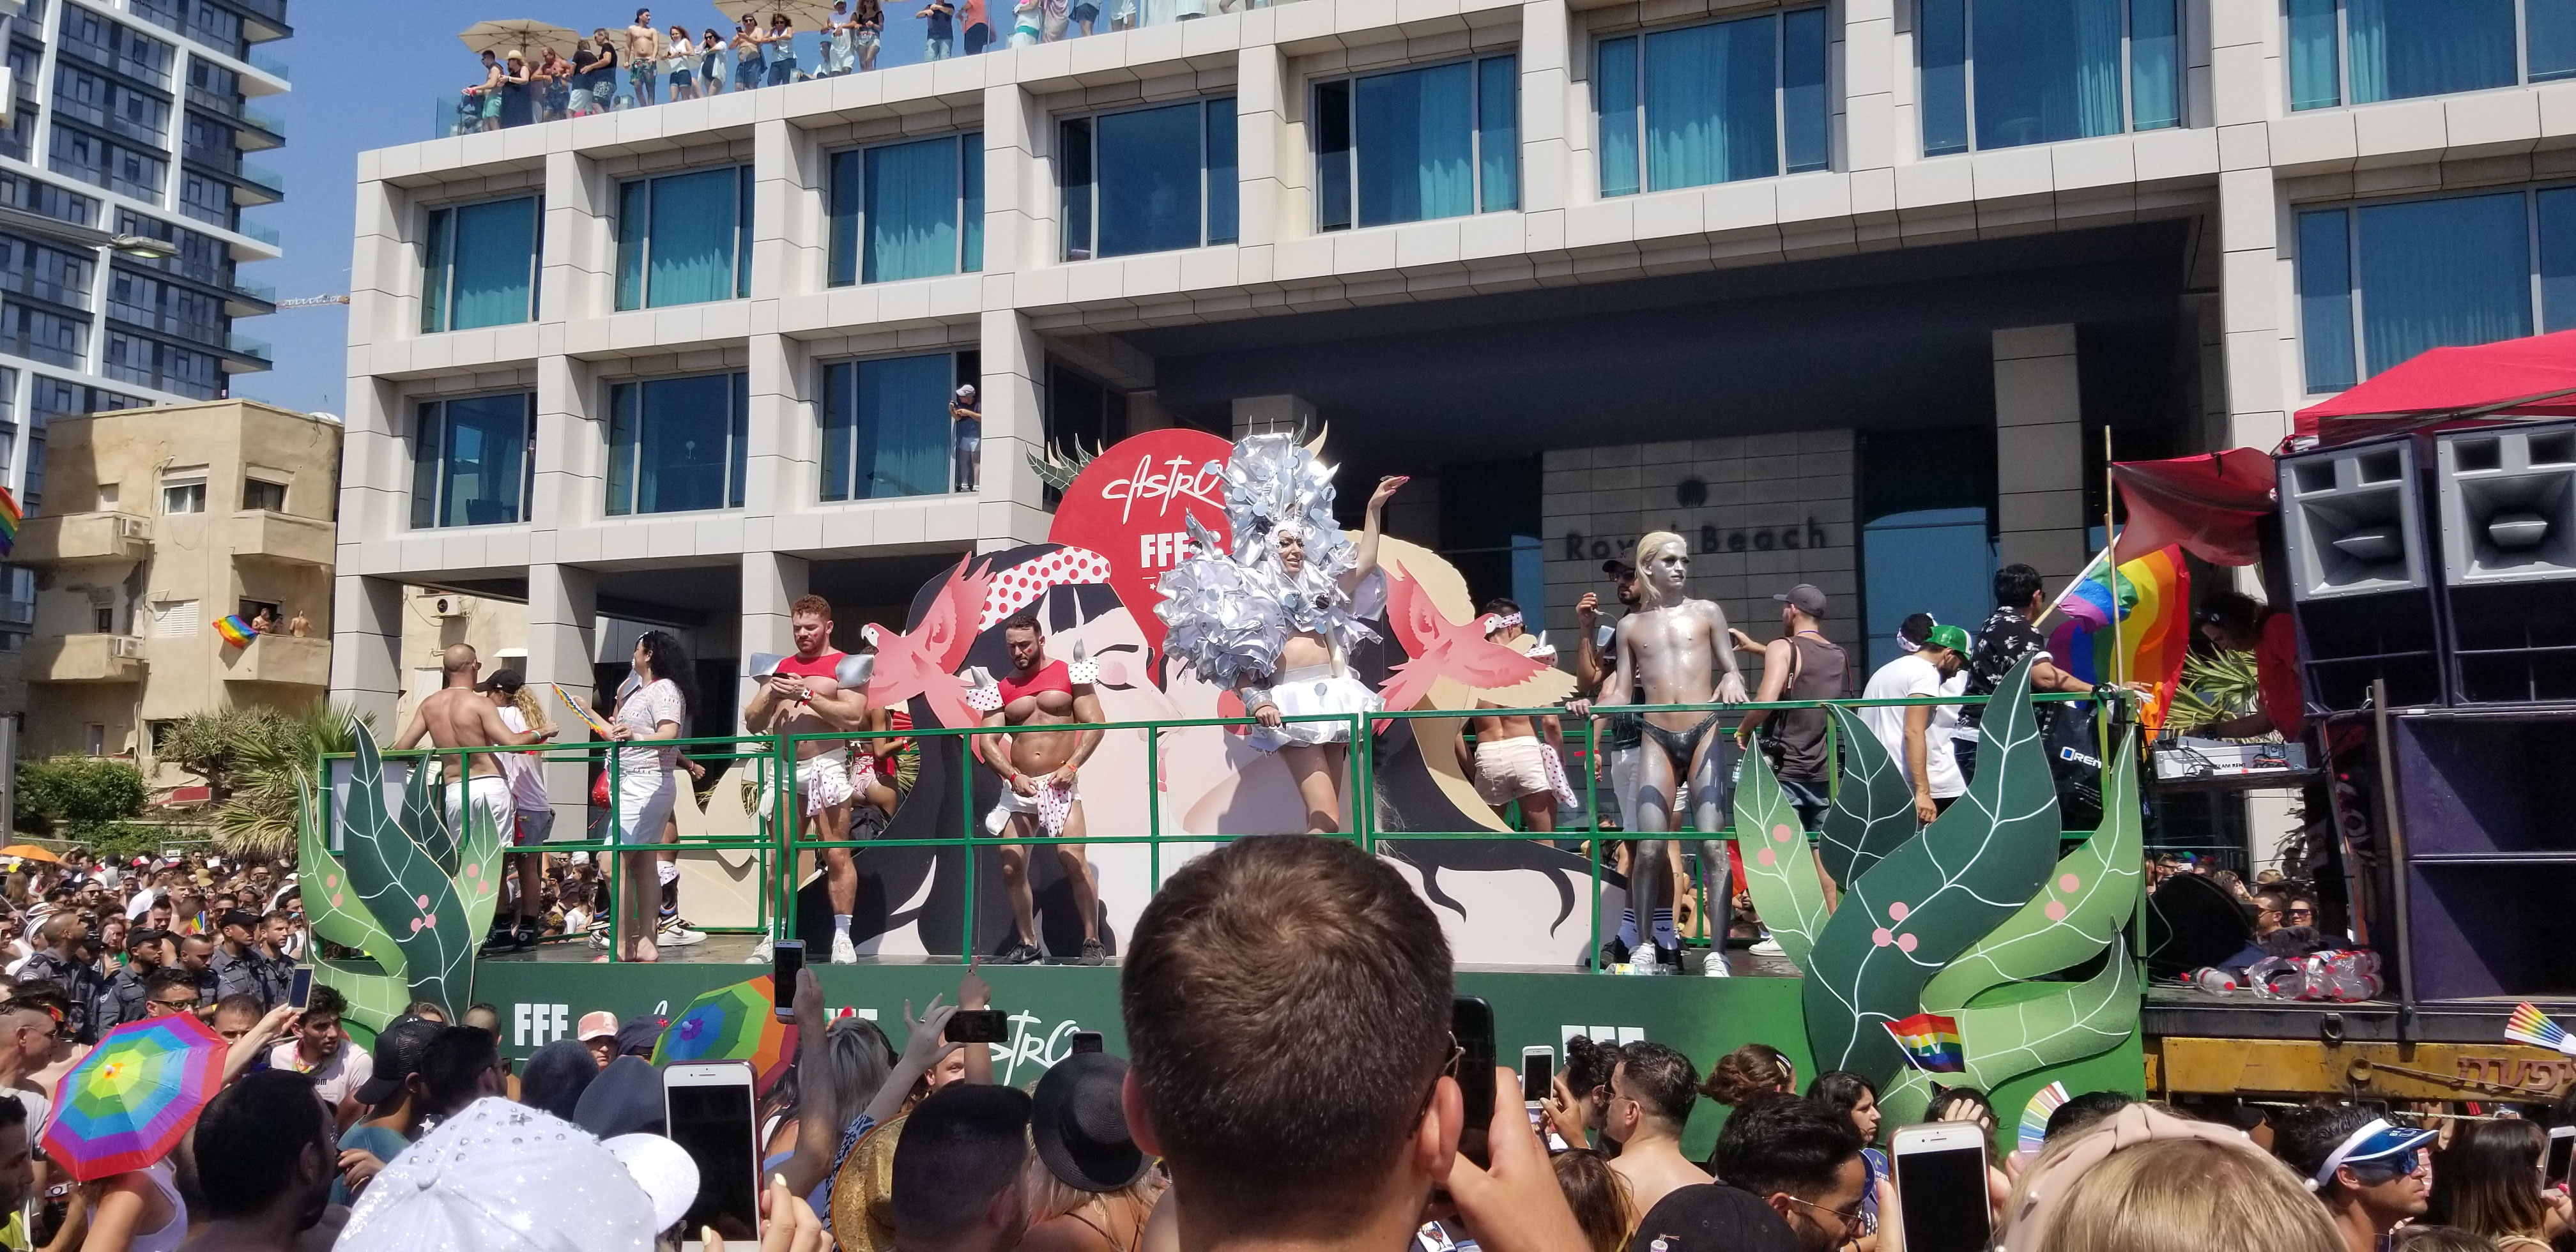 Pride Parade, Tel Aviv, Israel.